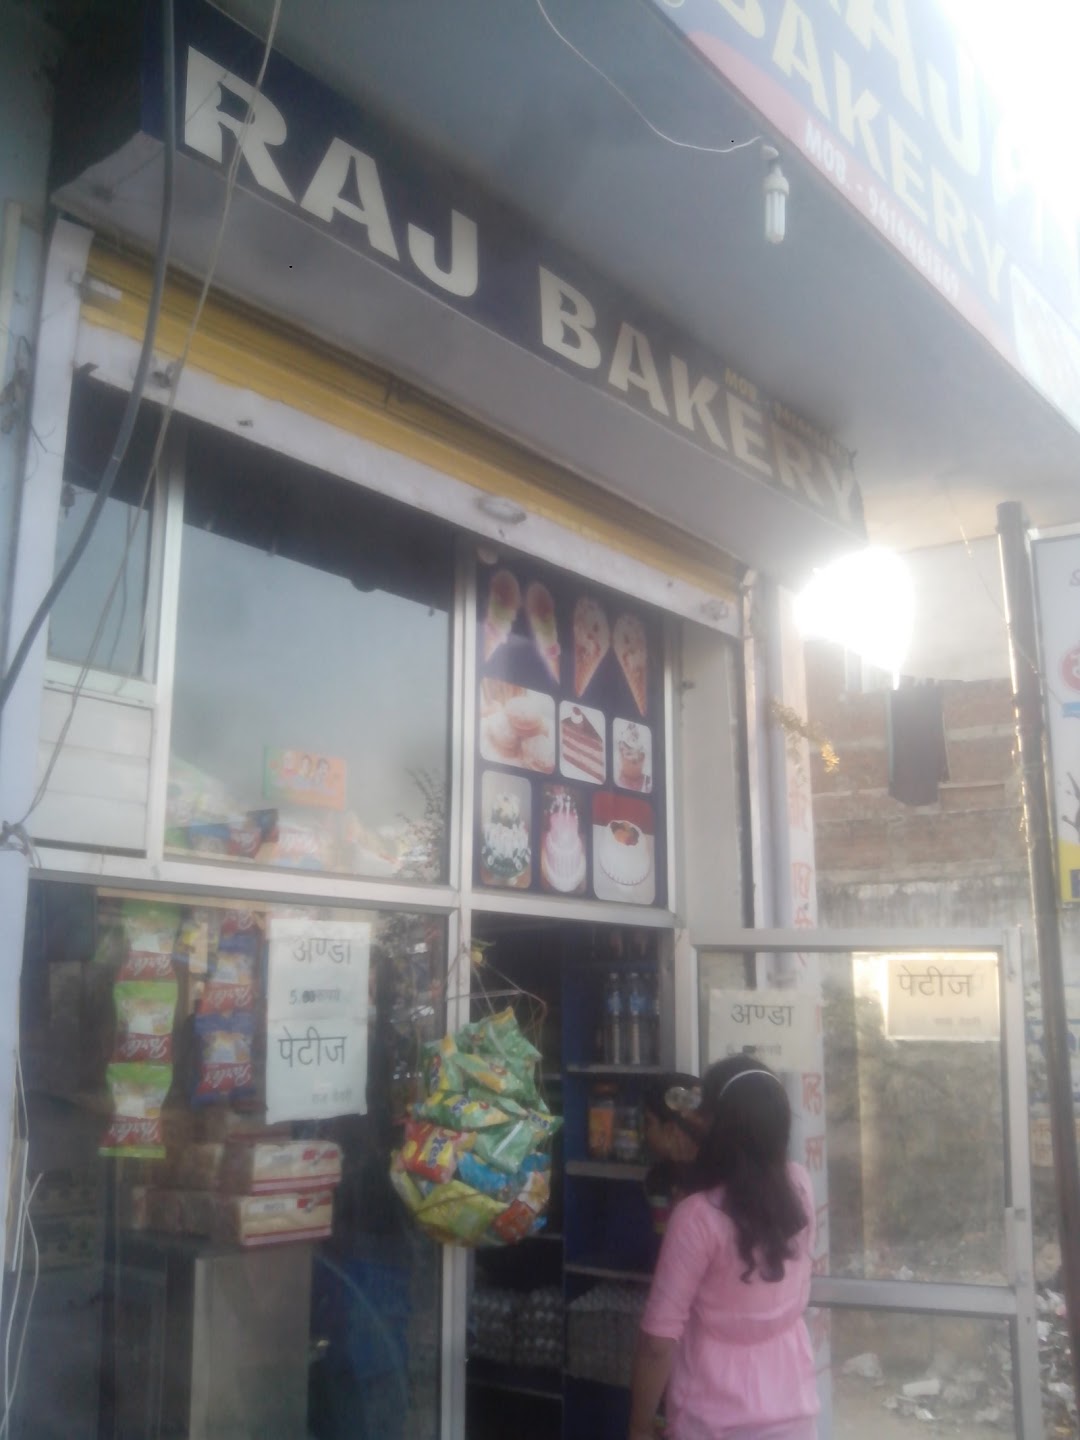 Raj Bakery